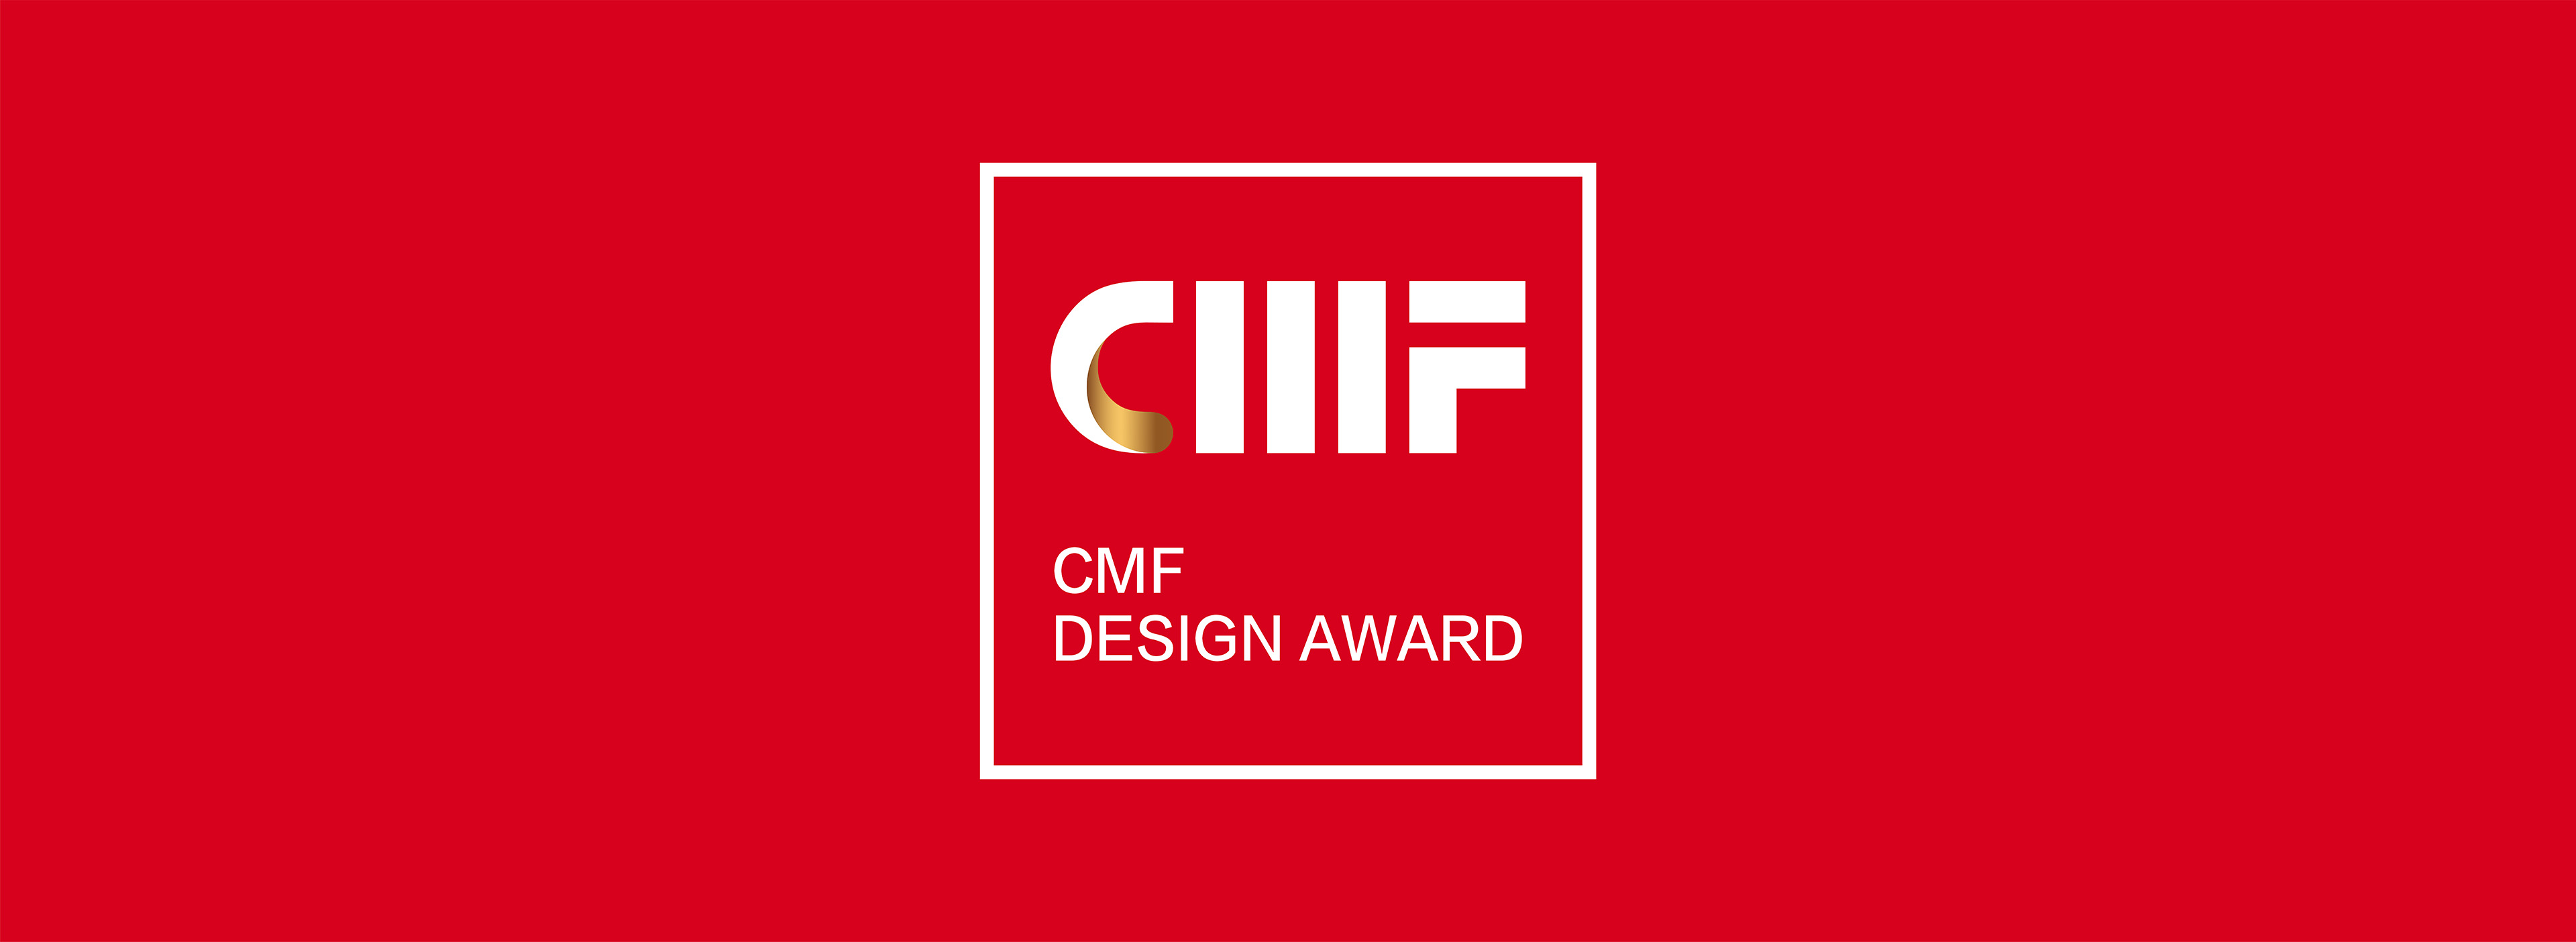 2019国际CMF设计奖.jpg